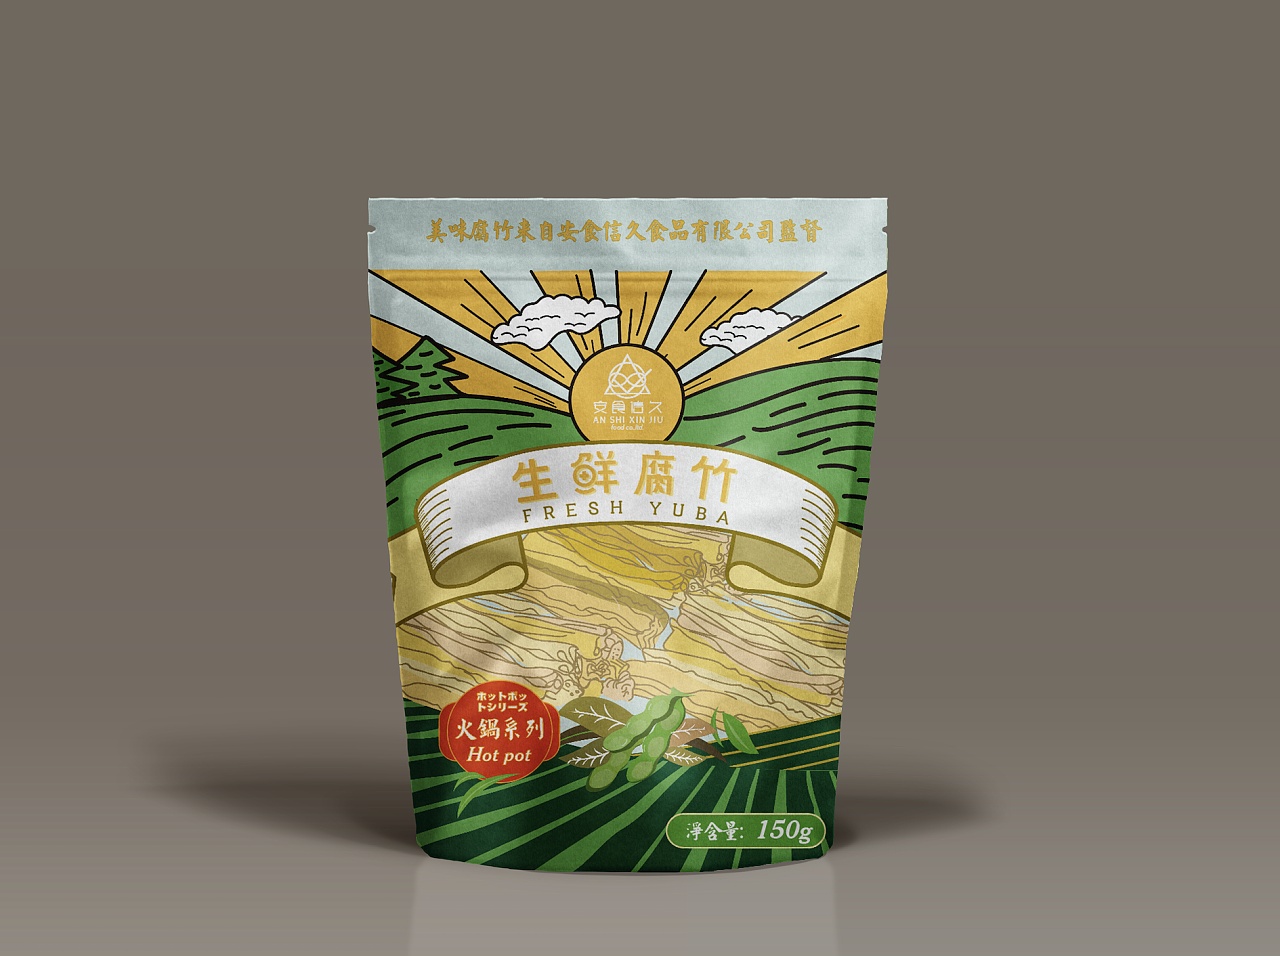 安信食久品牌腐竹产品包装设计